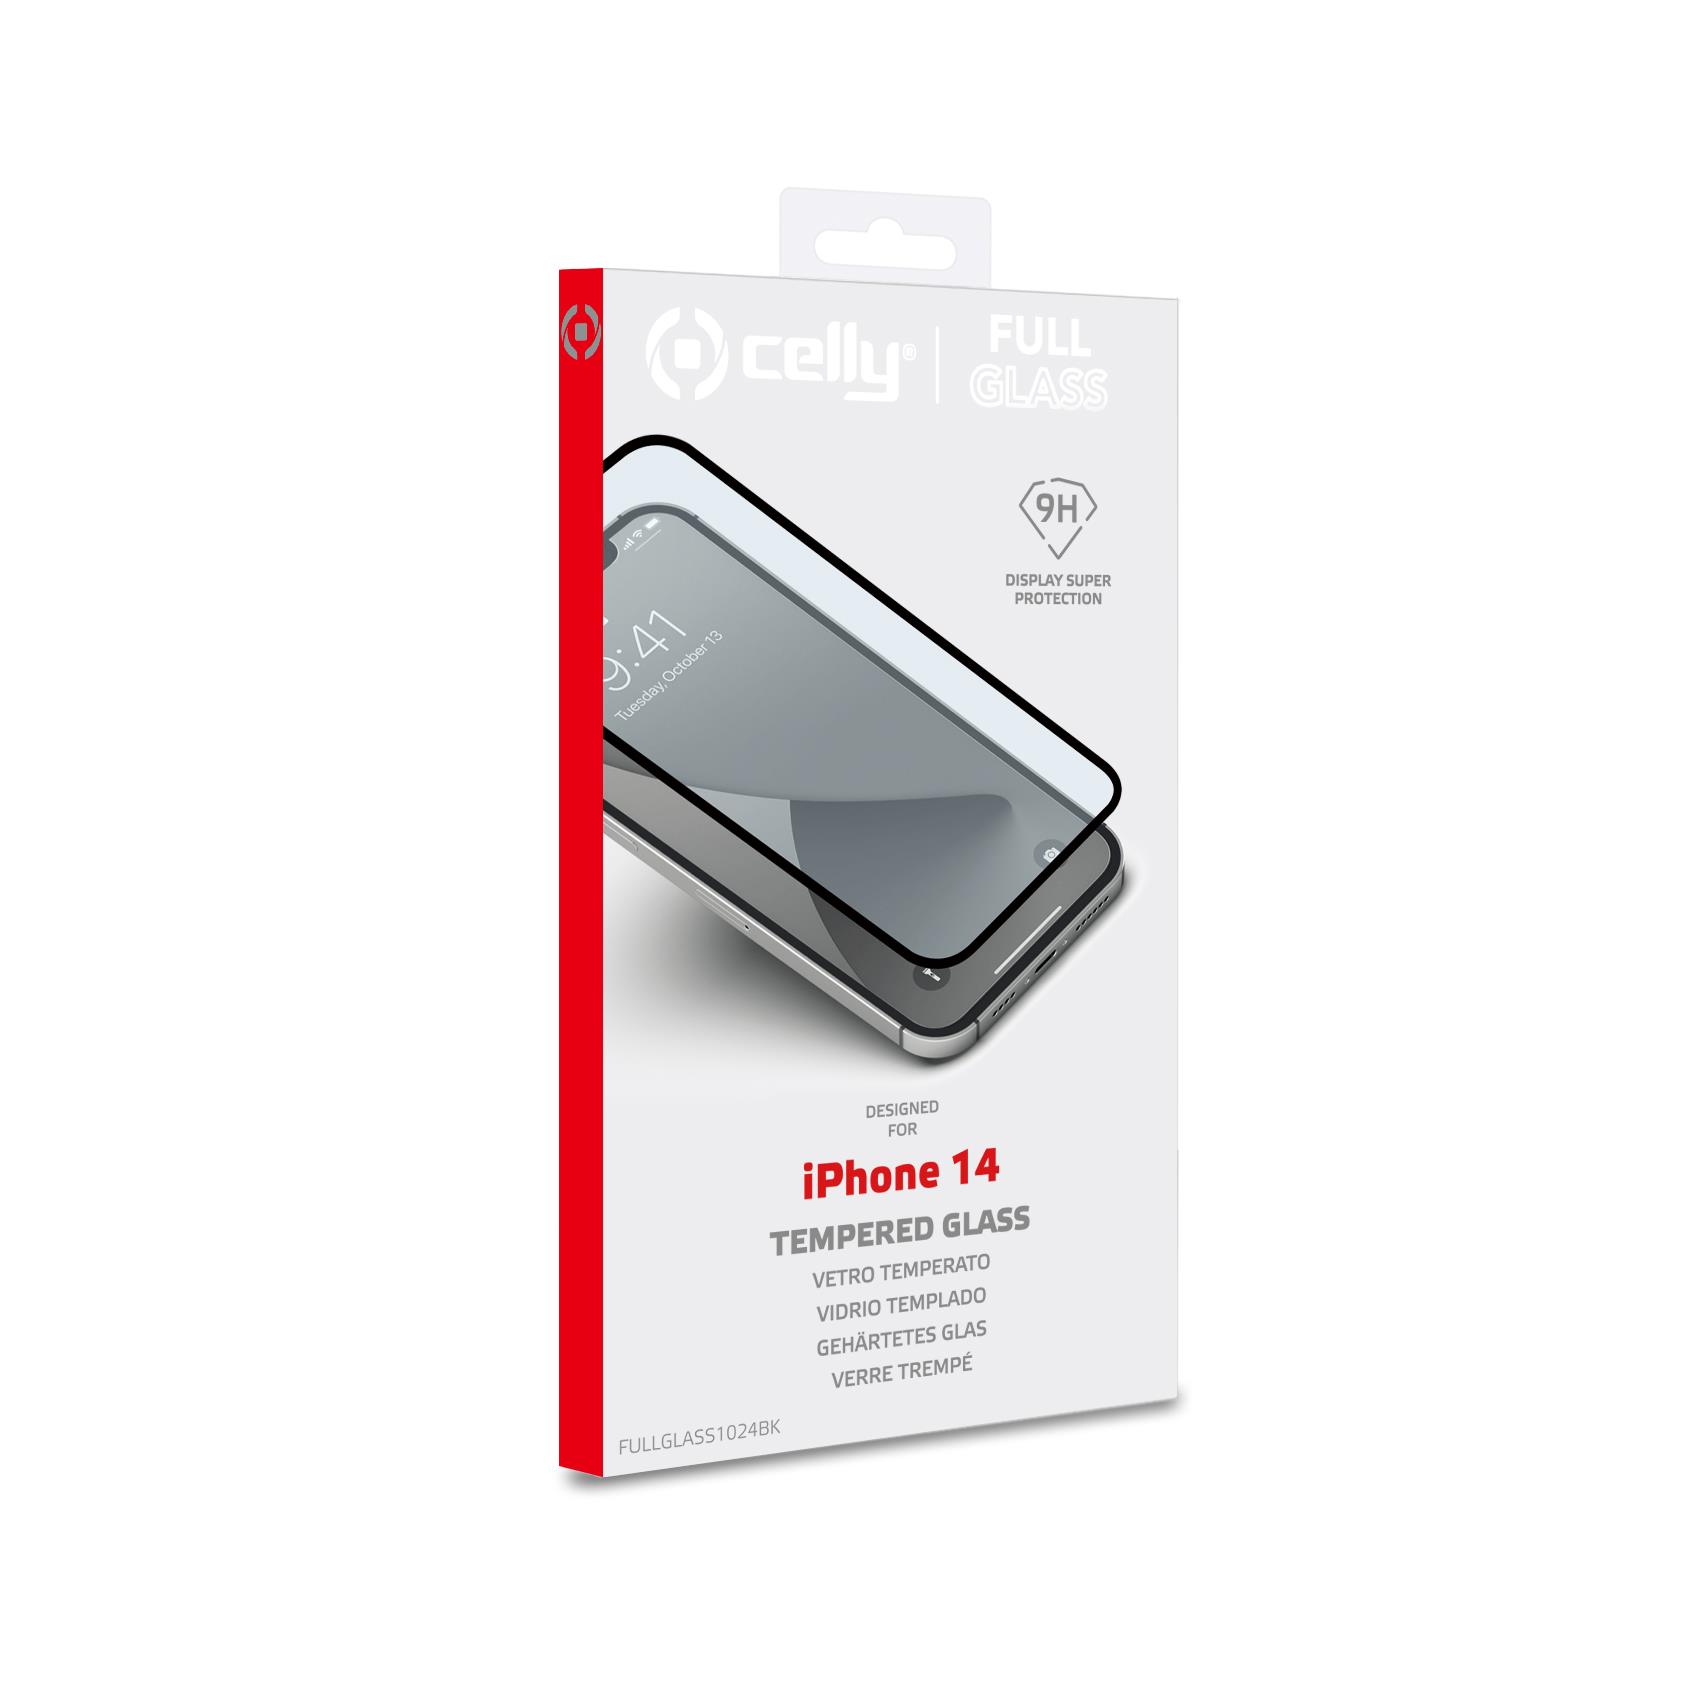 Pellicola vetro Celly iPhone 14 full glass FULLGLASS1024BK